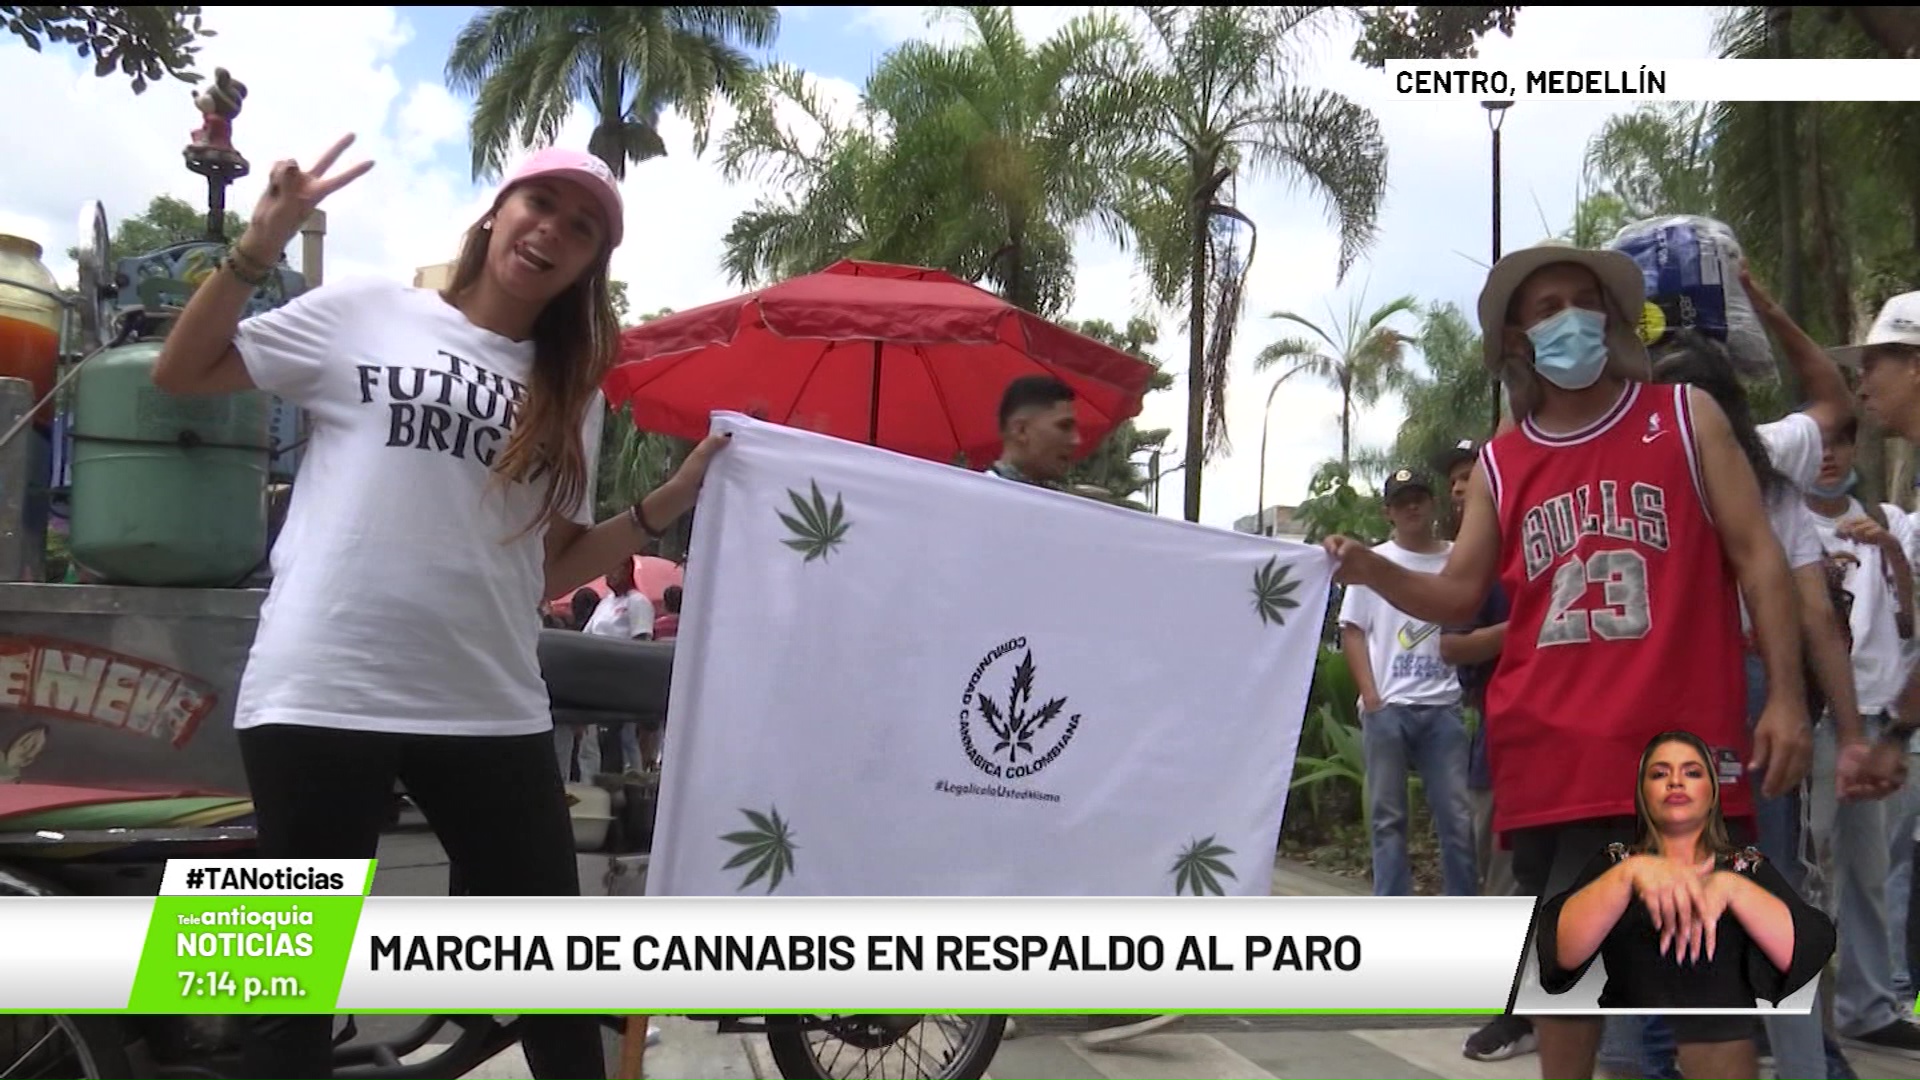 Marcha de cannabis en respaldo al paro